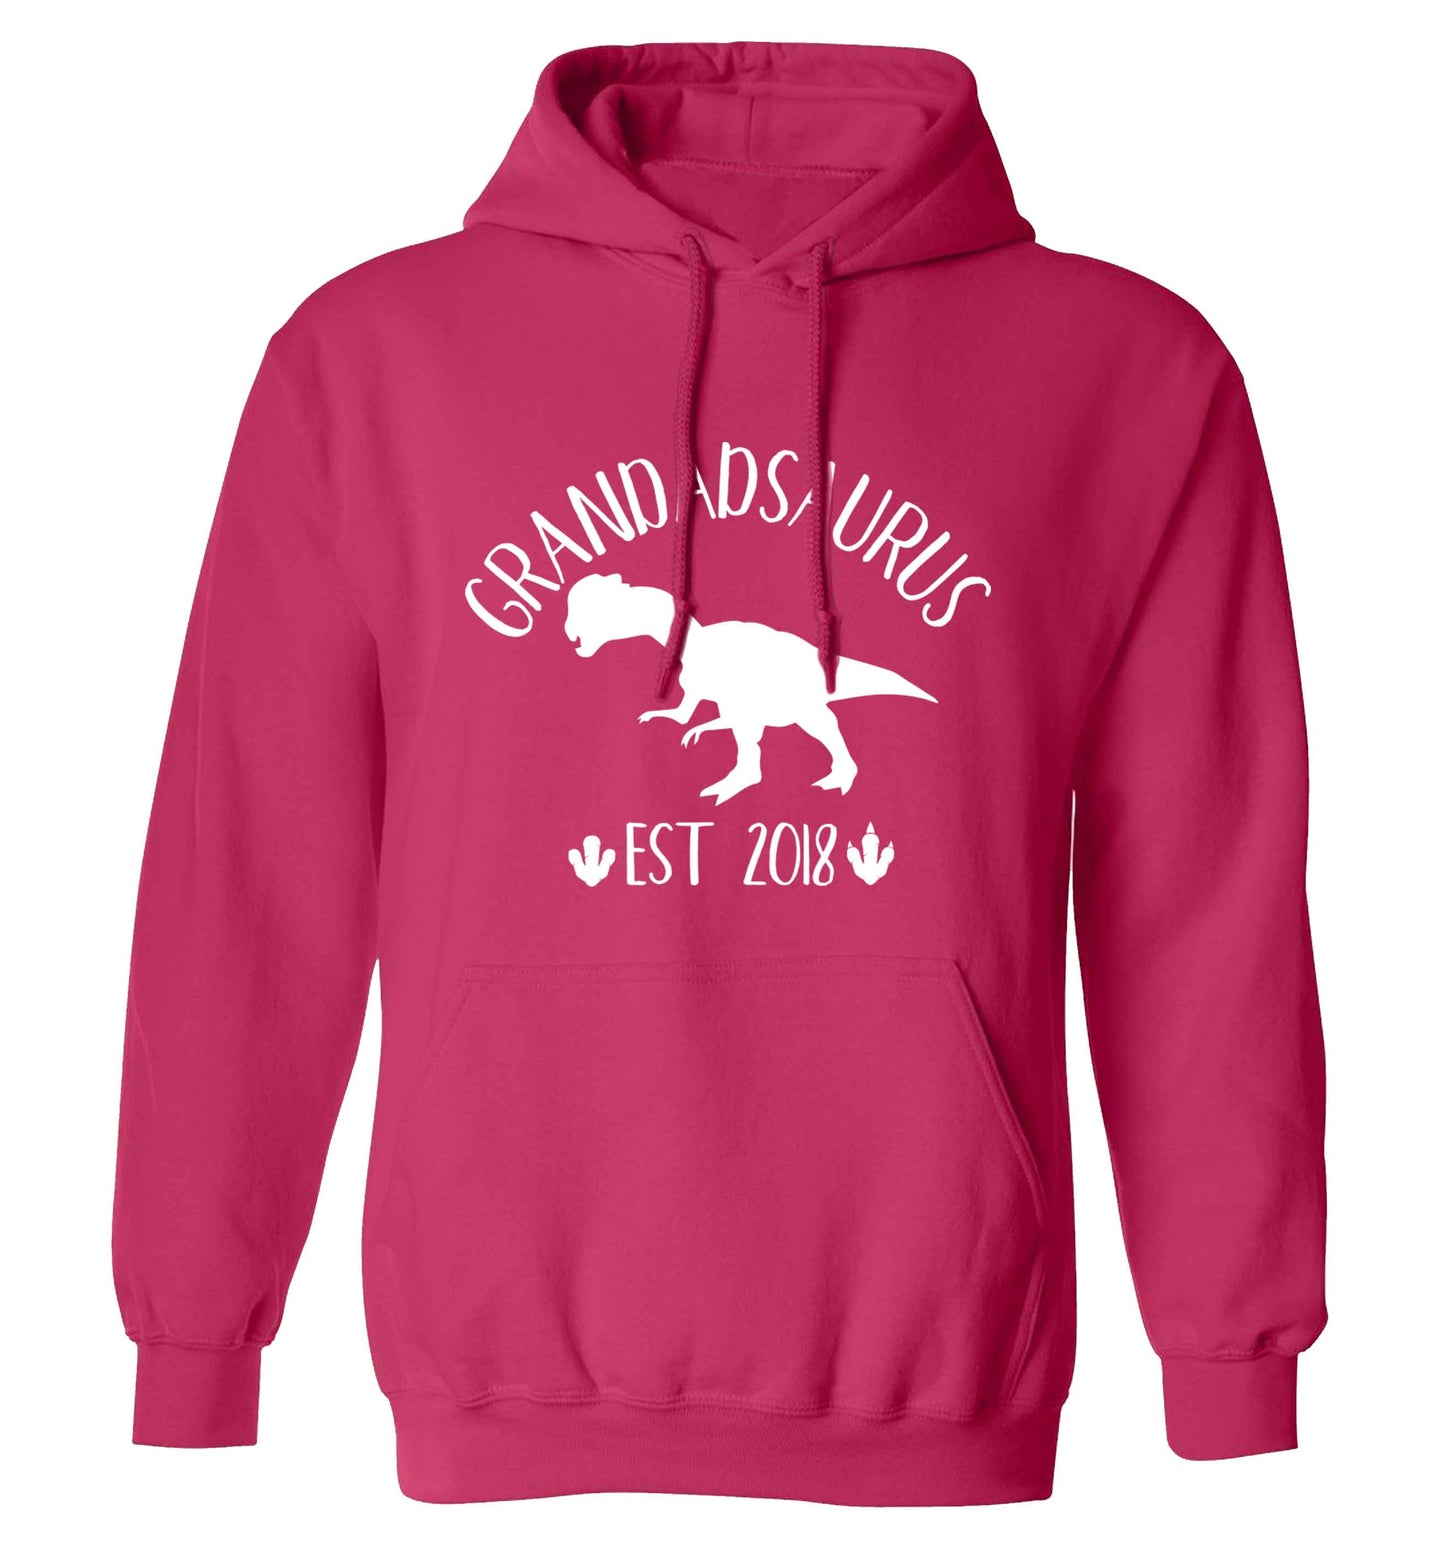 Personalised grandadsaurus since (custom date) adults unisex pink hoodie 2XL